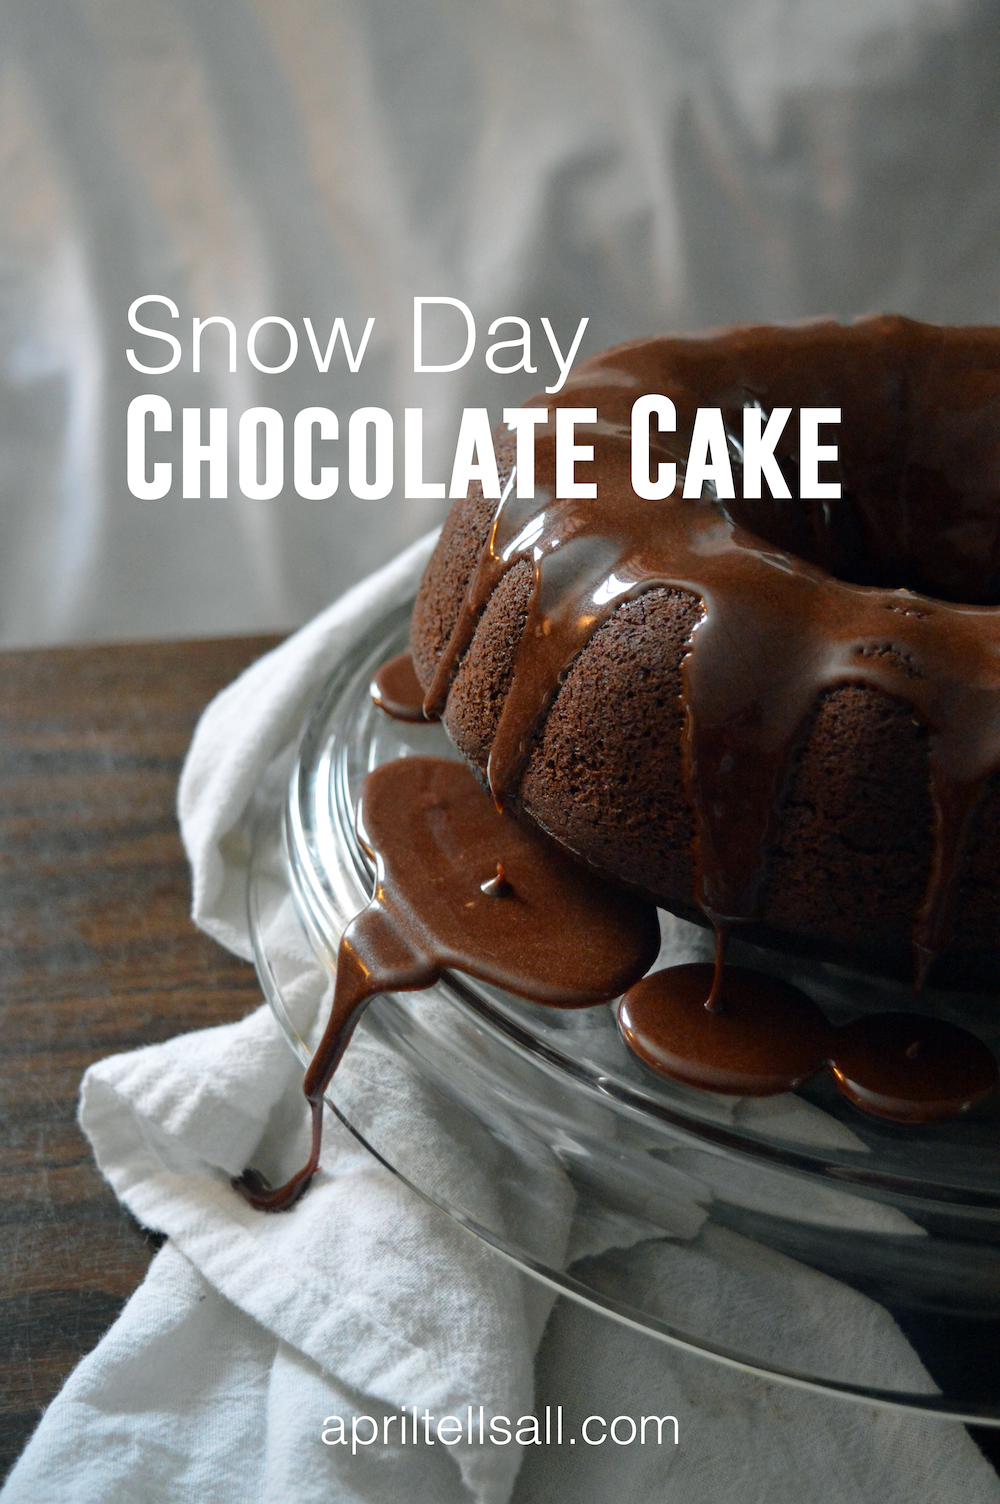 Snow Day Chocolate Cake